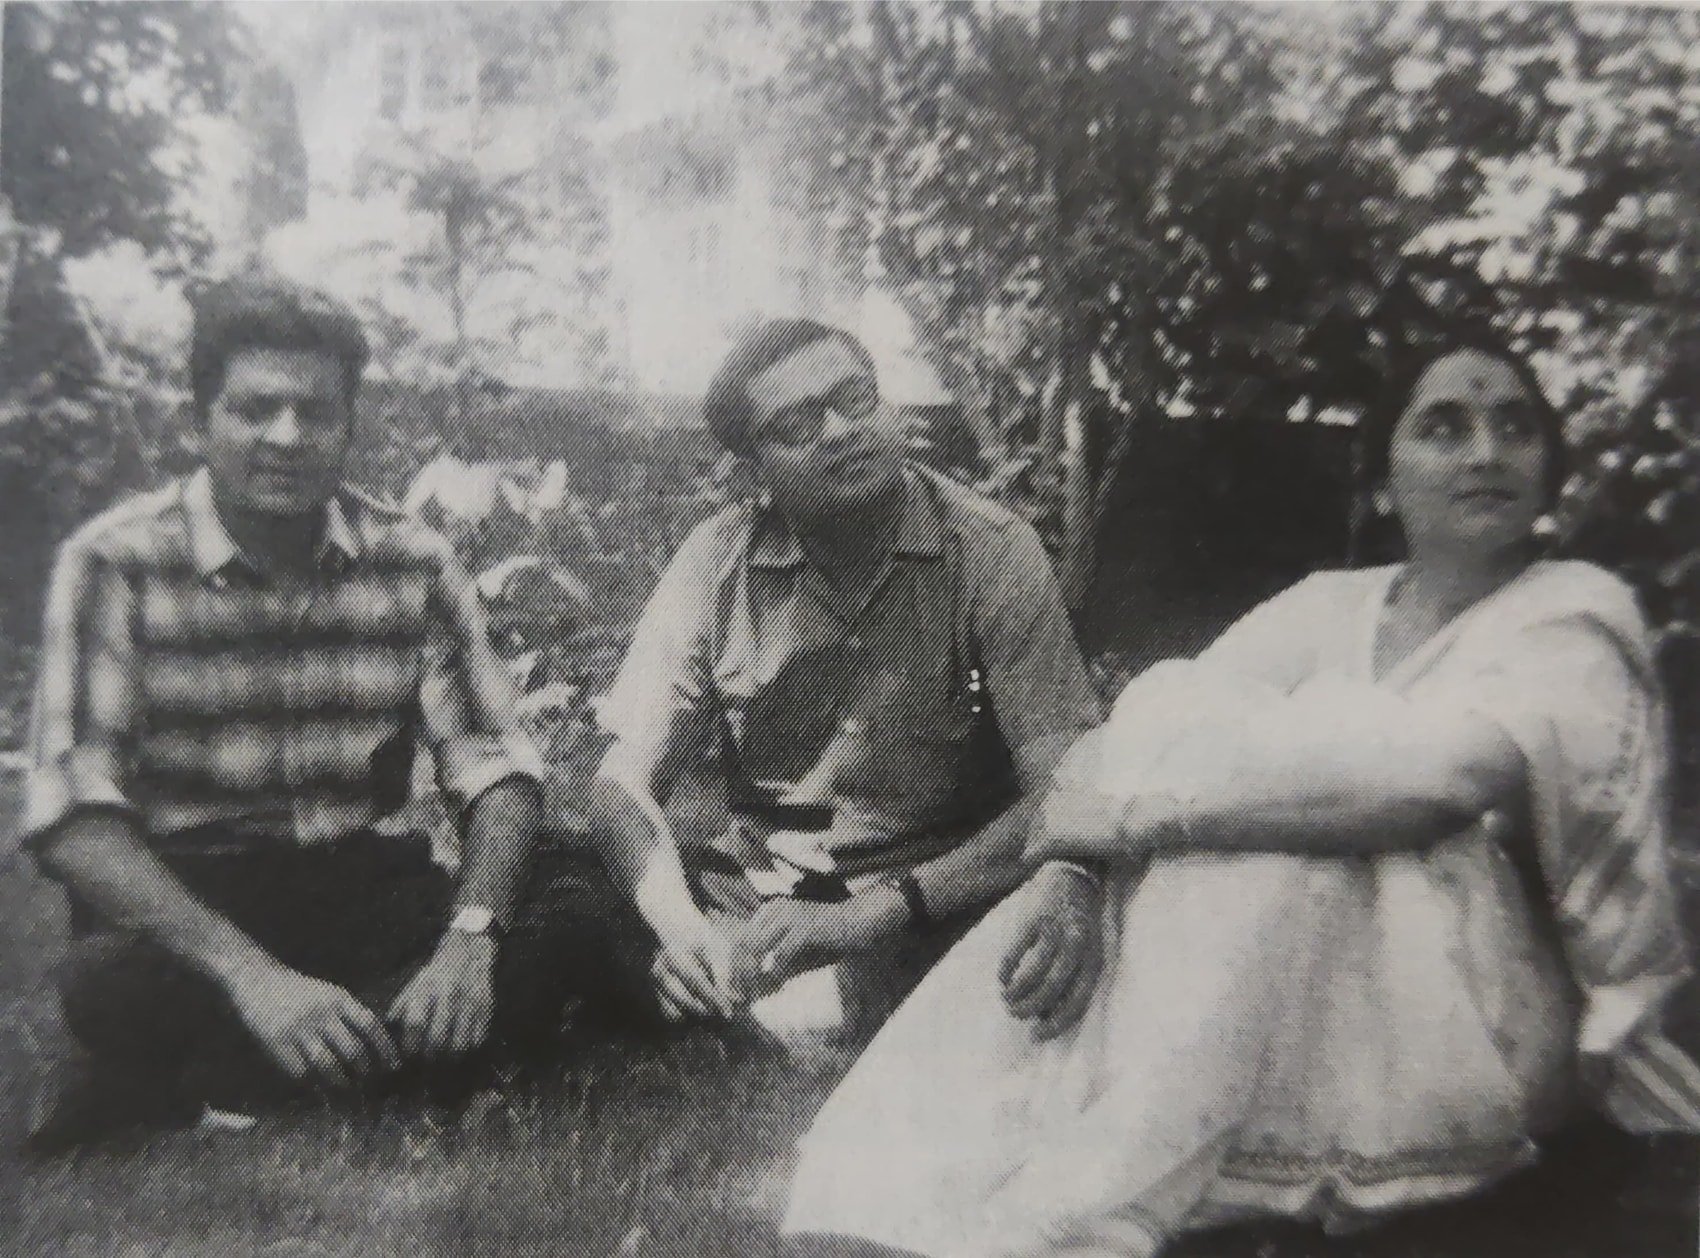 Desai with her music teacher Yunus Hussain Khan and Jagdish Bhagwati in Delhi, c. 1964